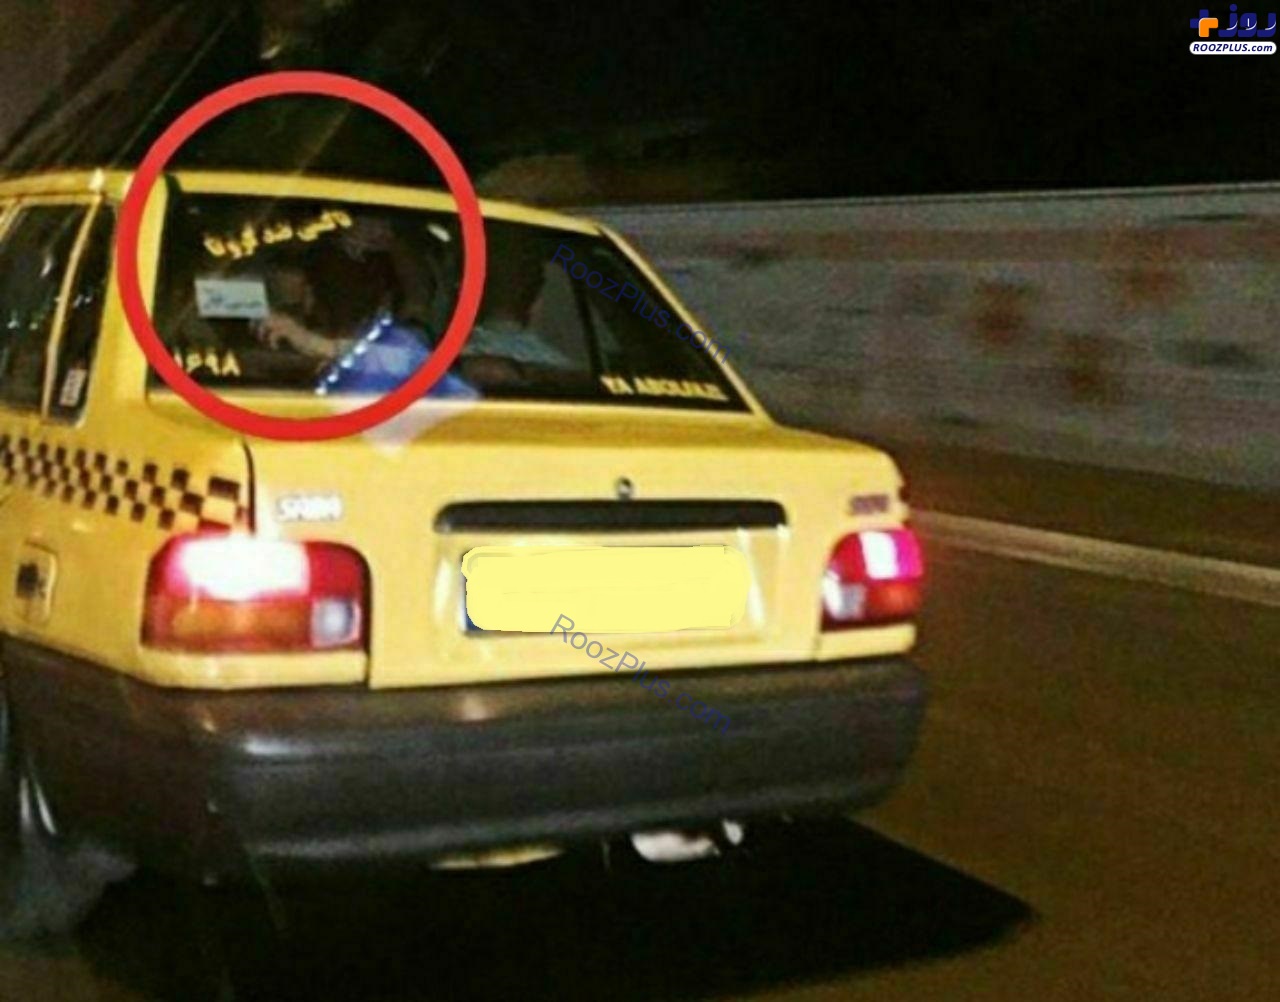 تاکسی ضدکرونا به ایران رسید! +عکس